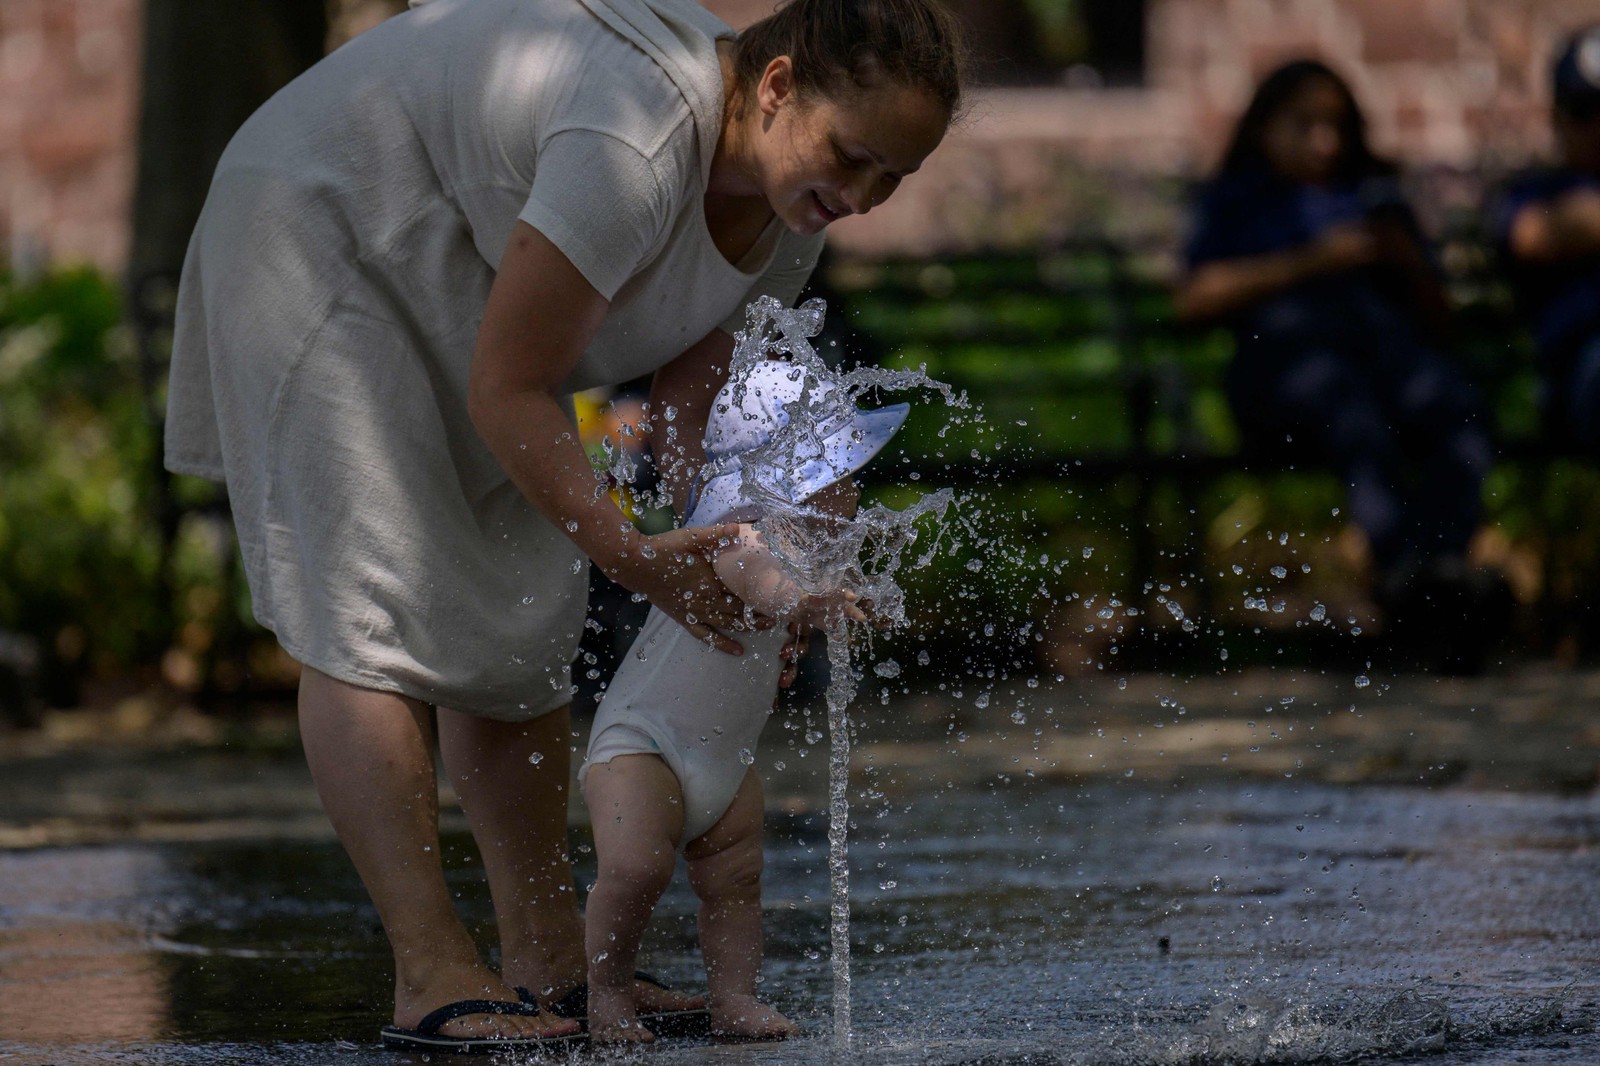 Mulher e seu bebê se refrescam em uma fonte pública em um parque em Nova York, em 26 de julho de 2023 — Foto: ANGELA WEISS / AFP